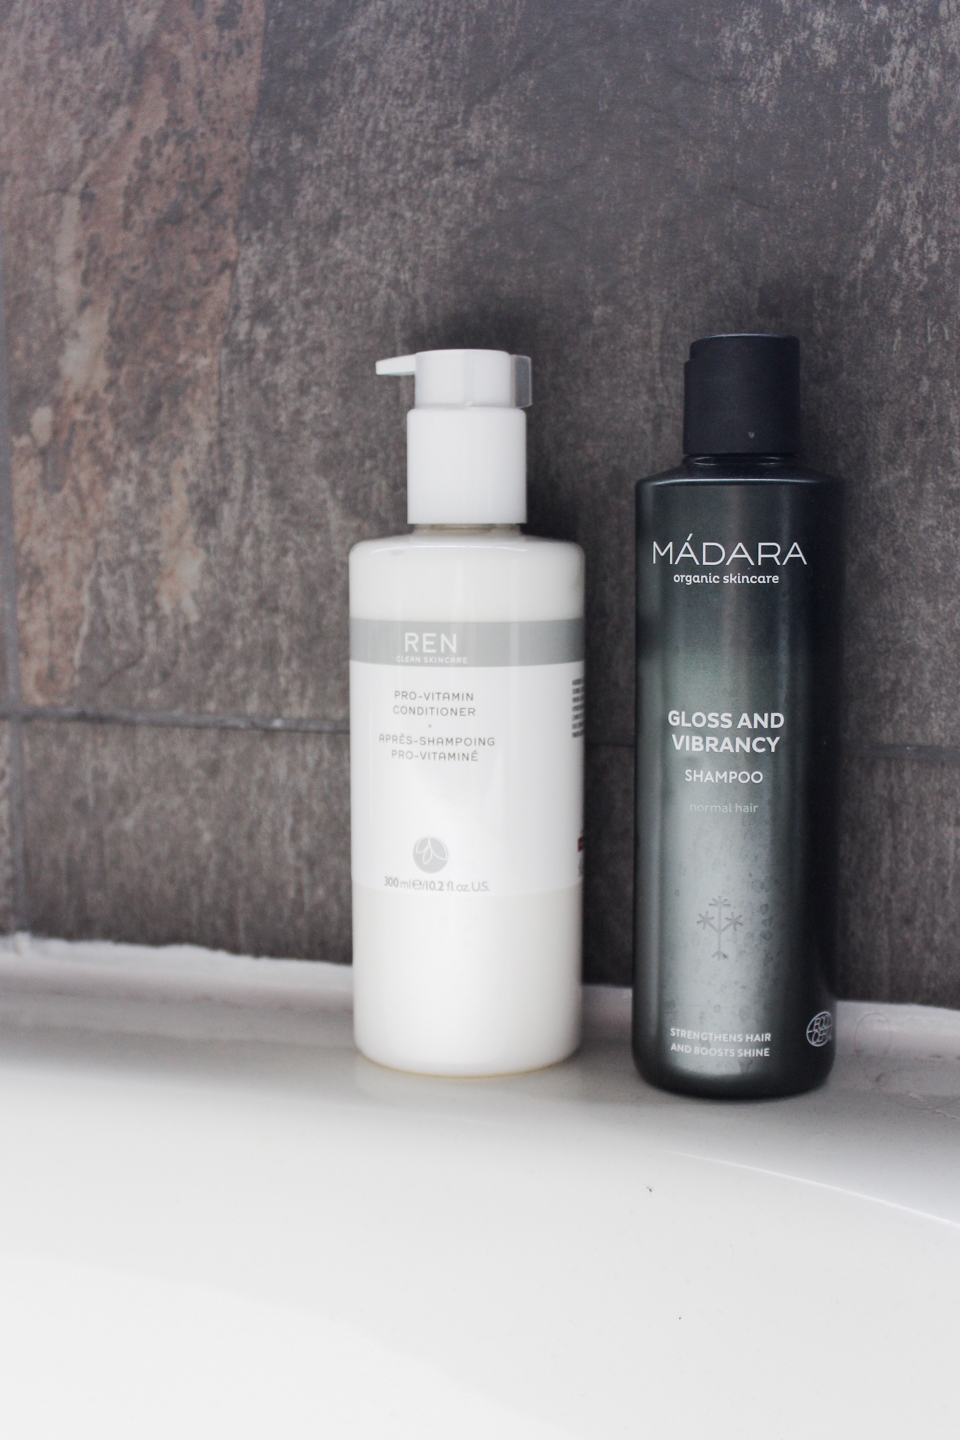 REN Skincare conditioner with Madara Shampoo